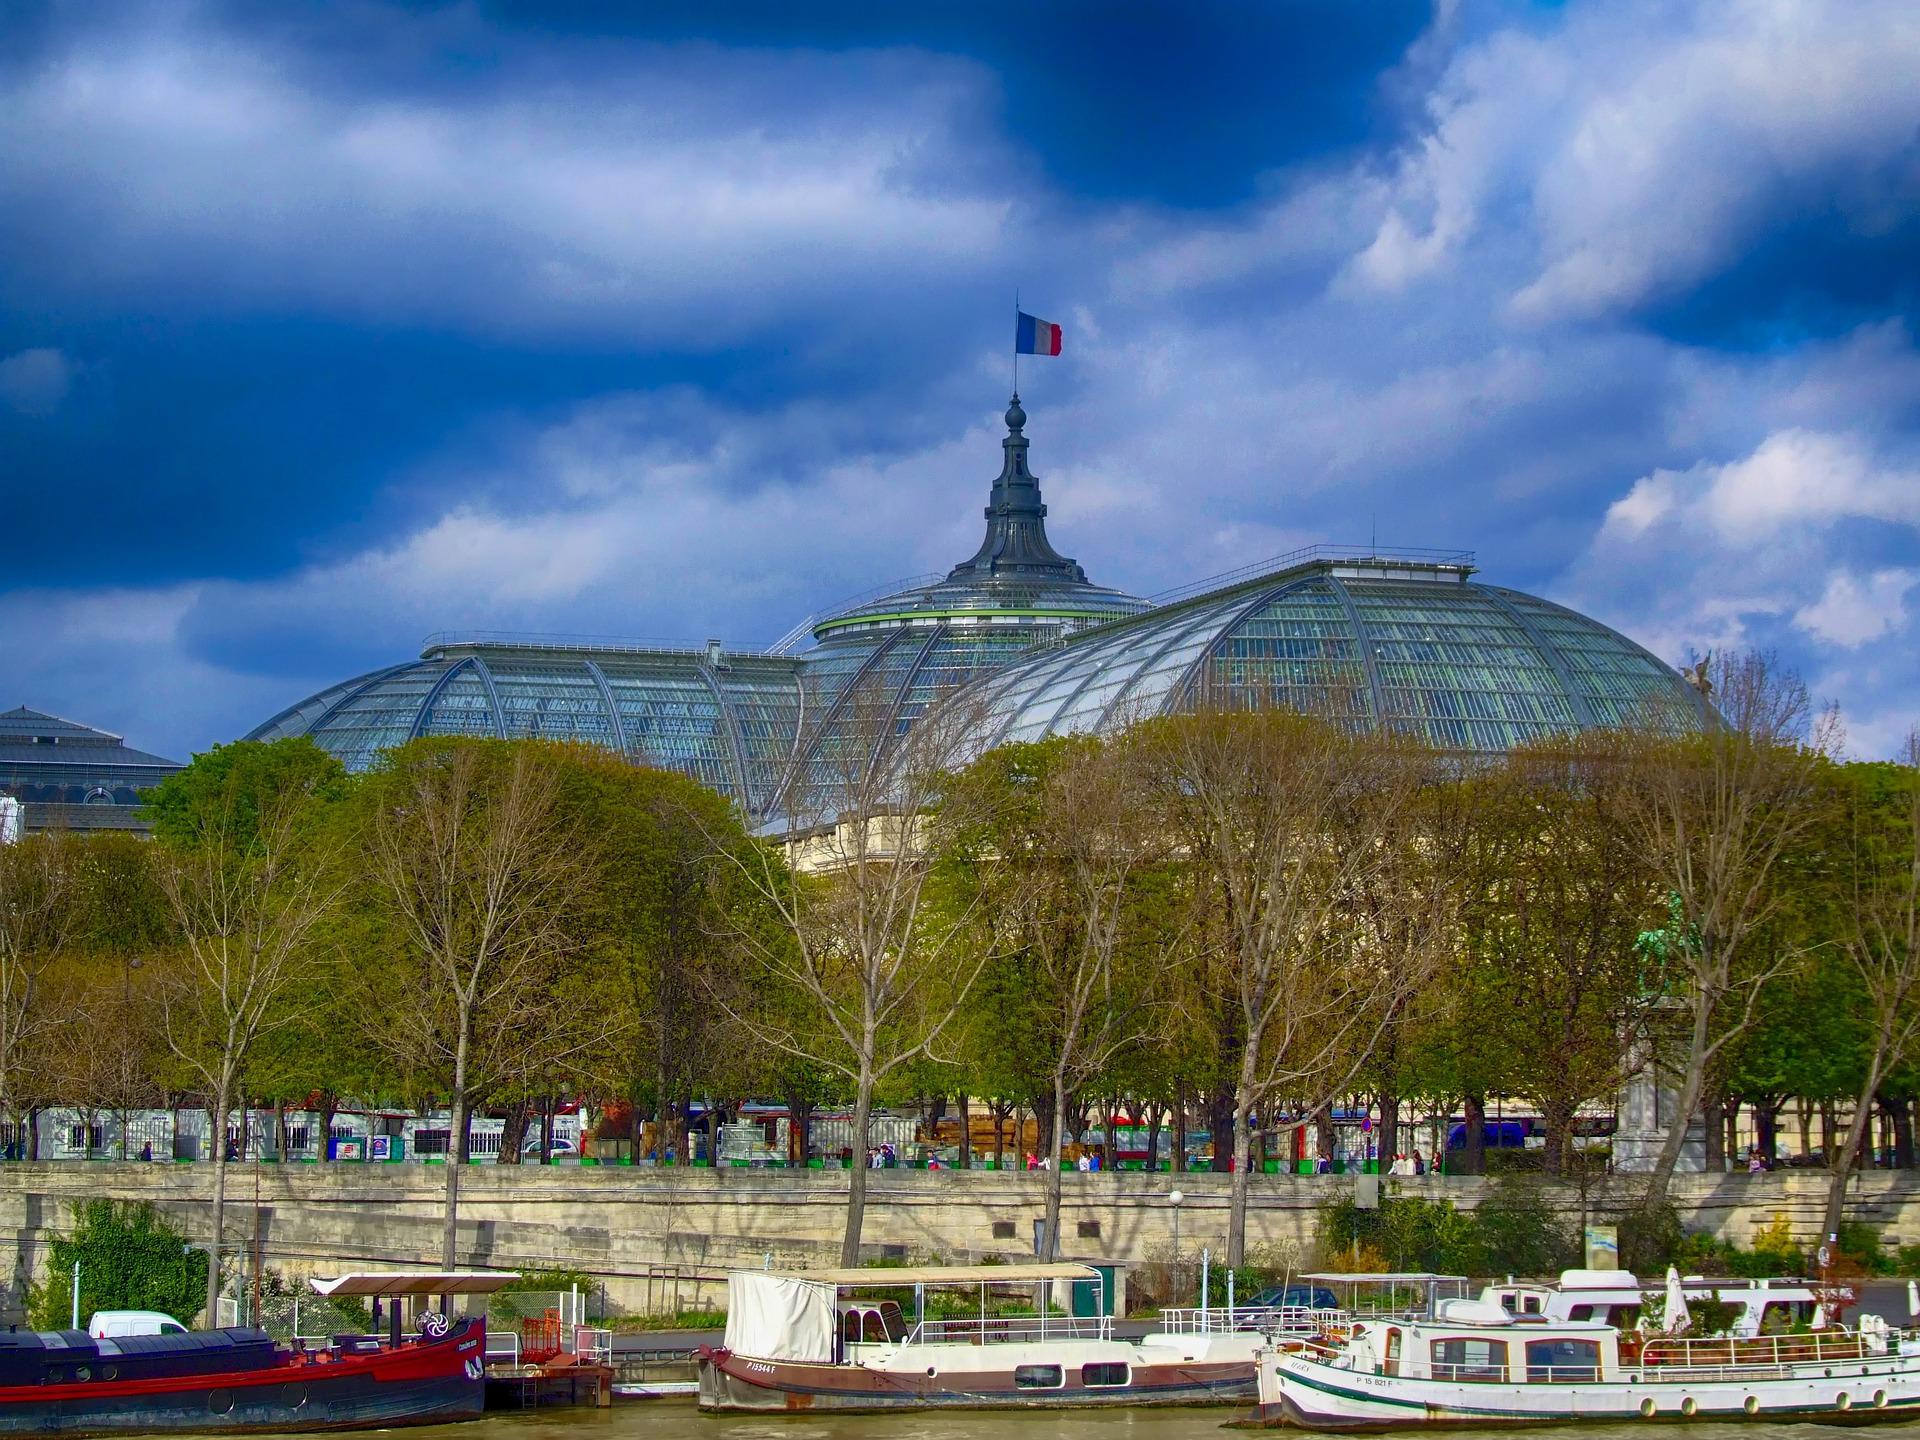 Grand Palais in Paris to host Louis Vuitton exhibit